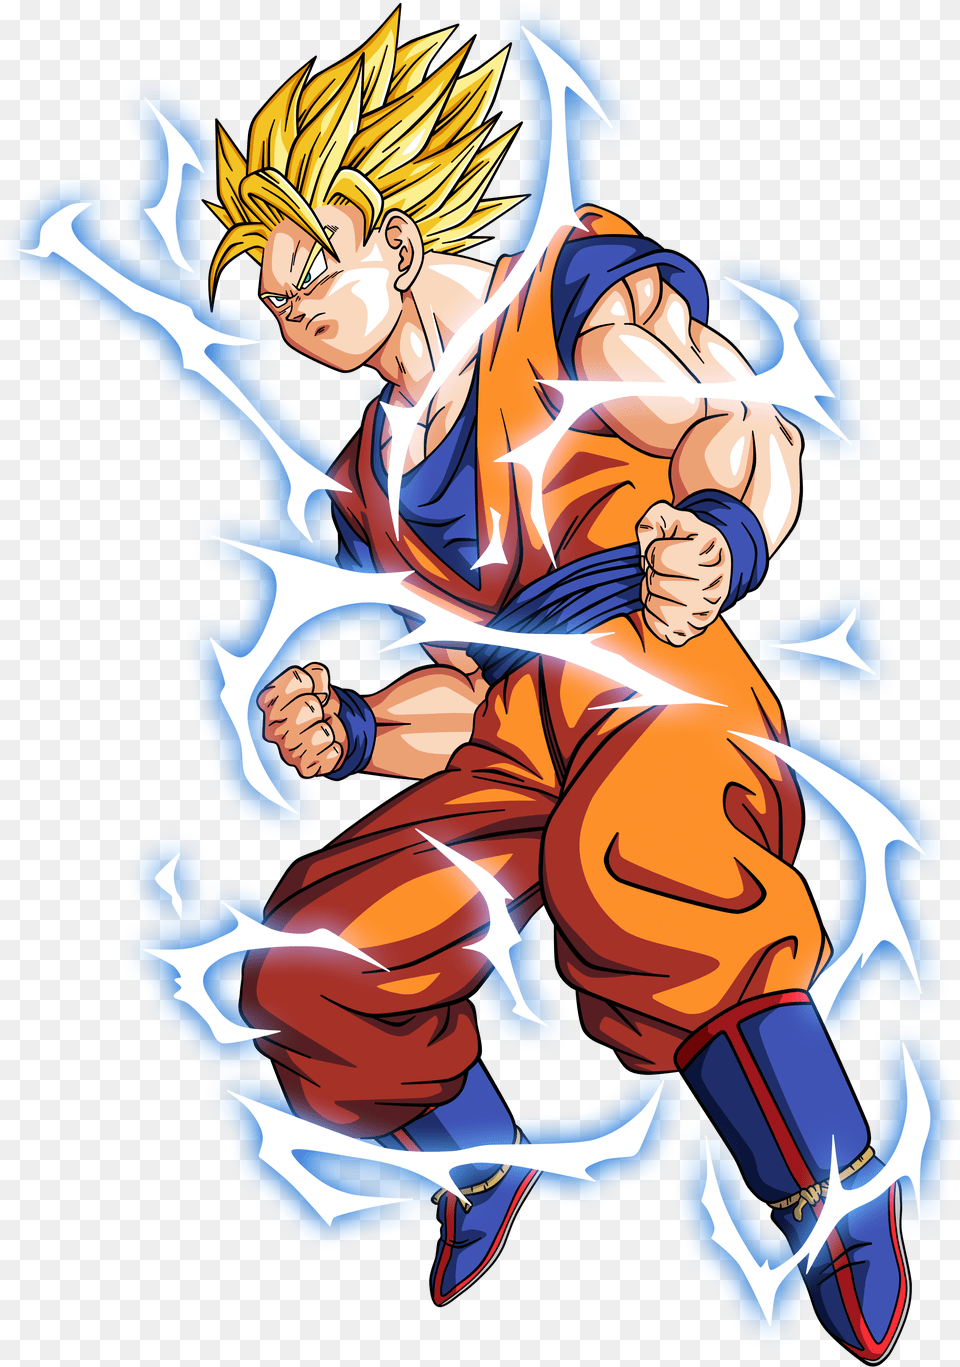 Download Hd Goku Super Saiyan 2 By Bardocksonic D73adde Dragon Ball Goku Super Saiyan, Book, Comics, Publication, Anime Png Image